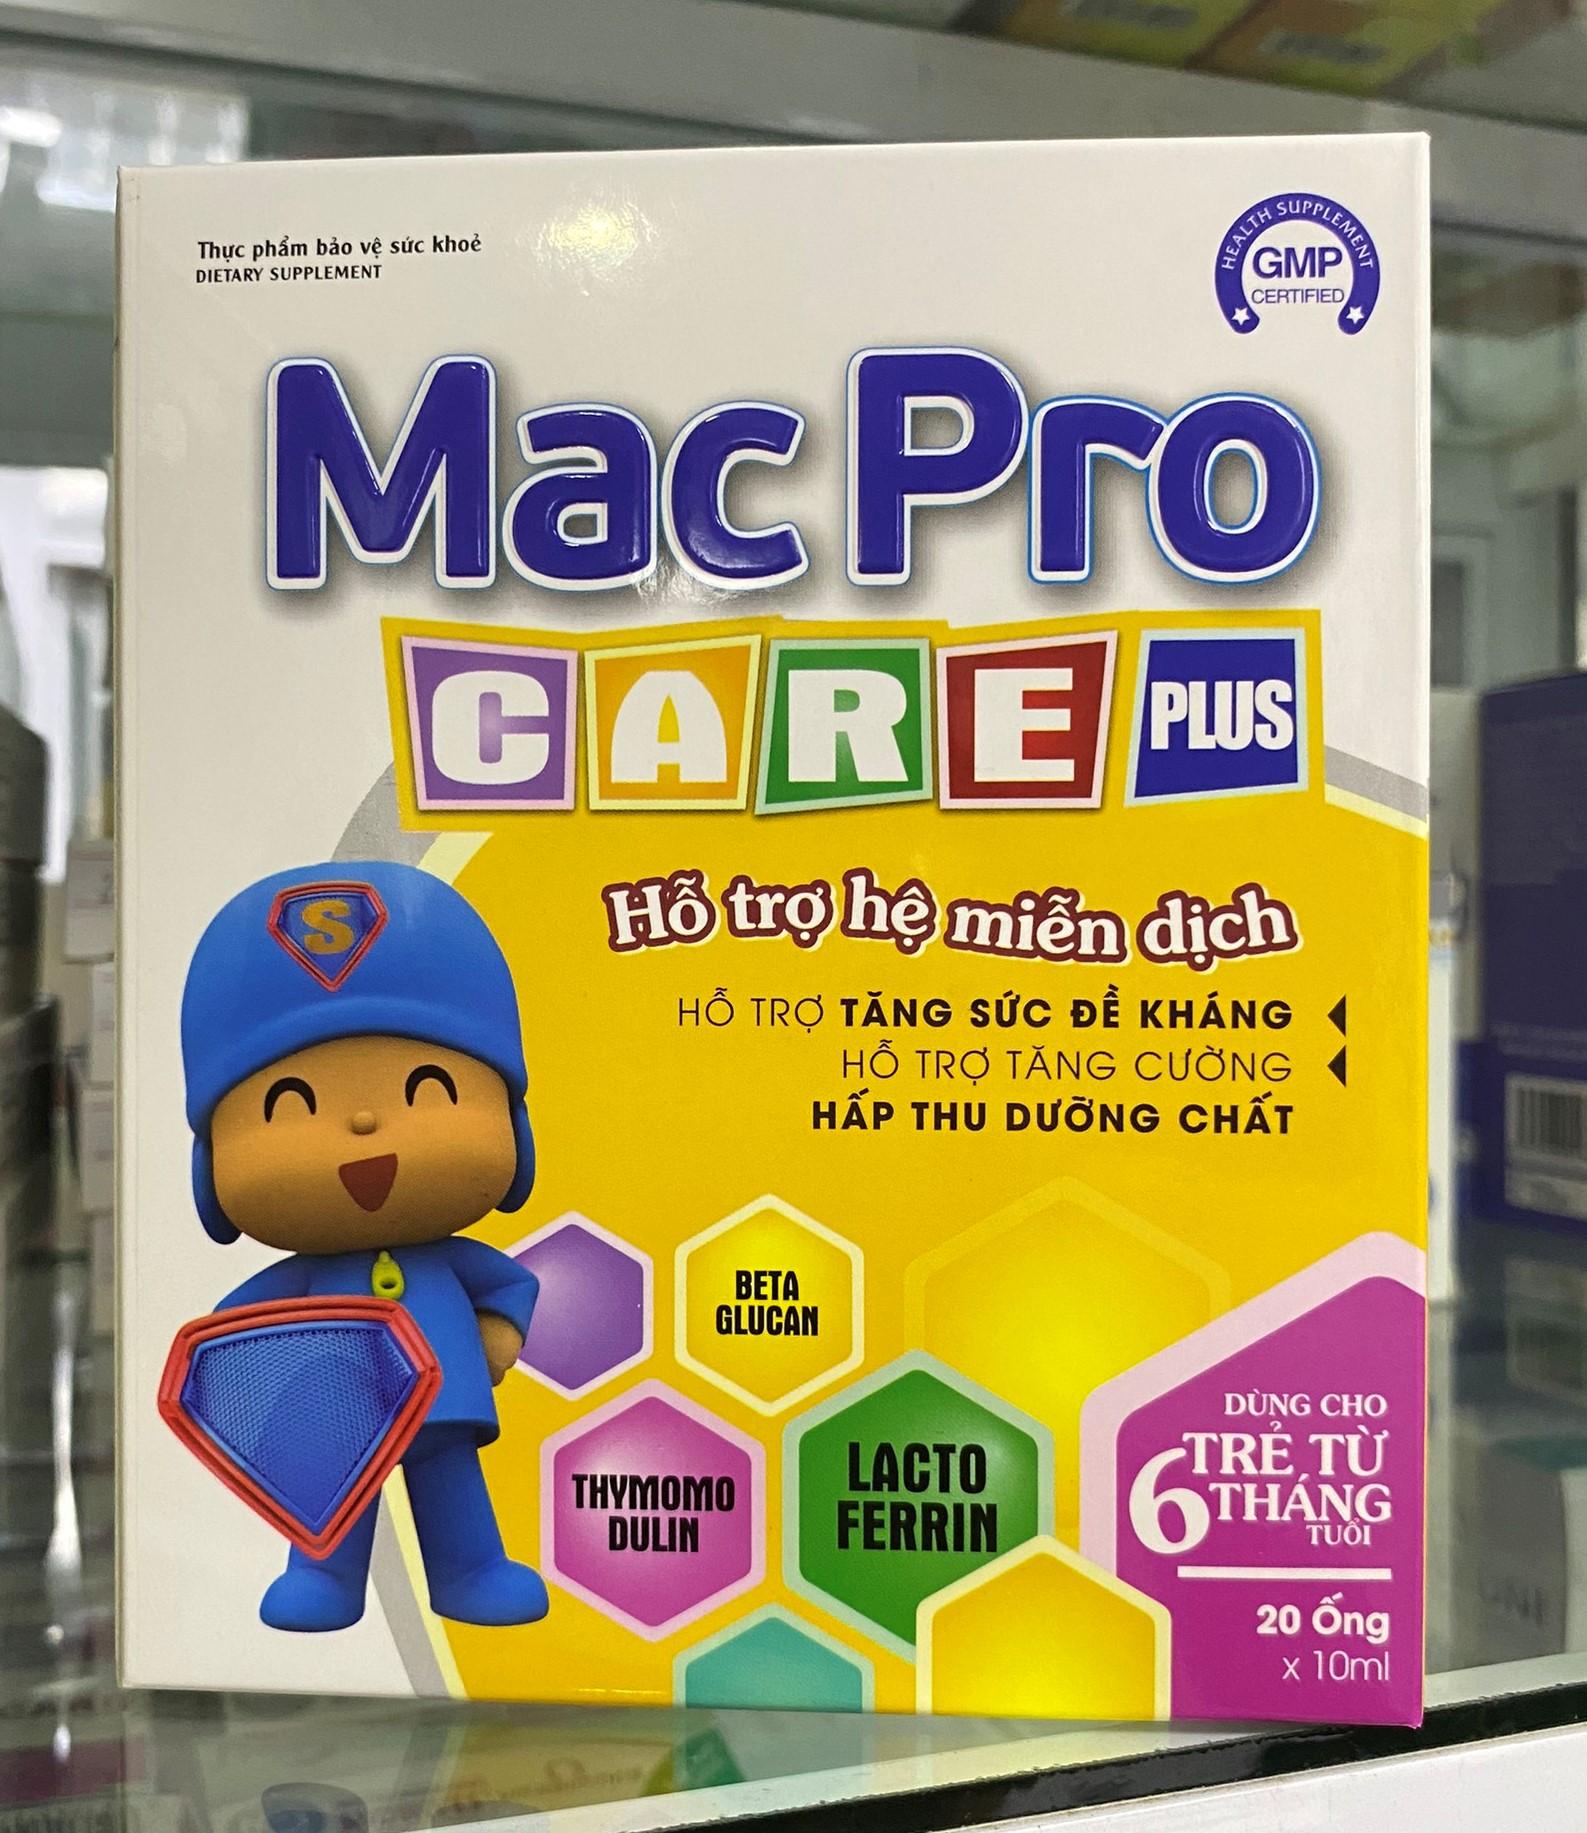 Mac-Pro care plus – Hỗ trợ tăng cường hệ miễn dịch